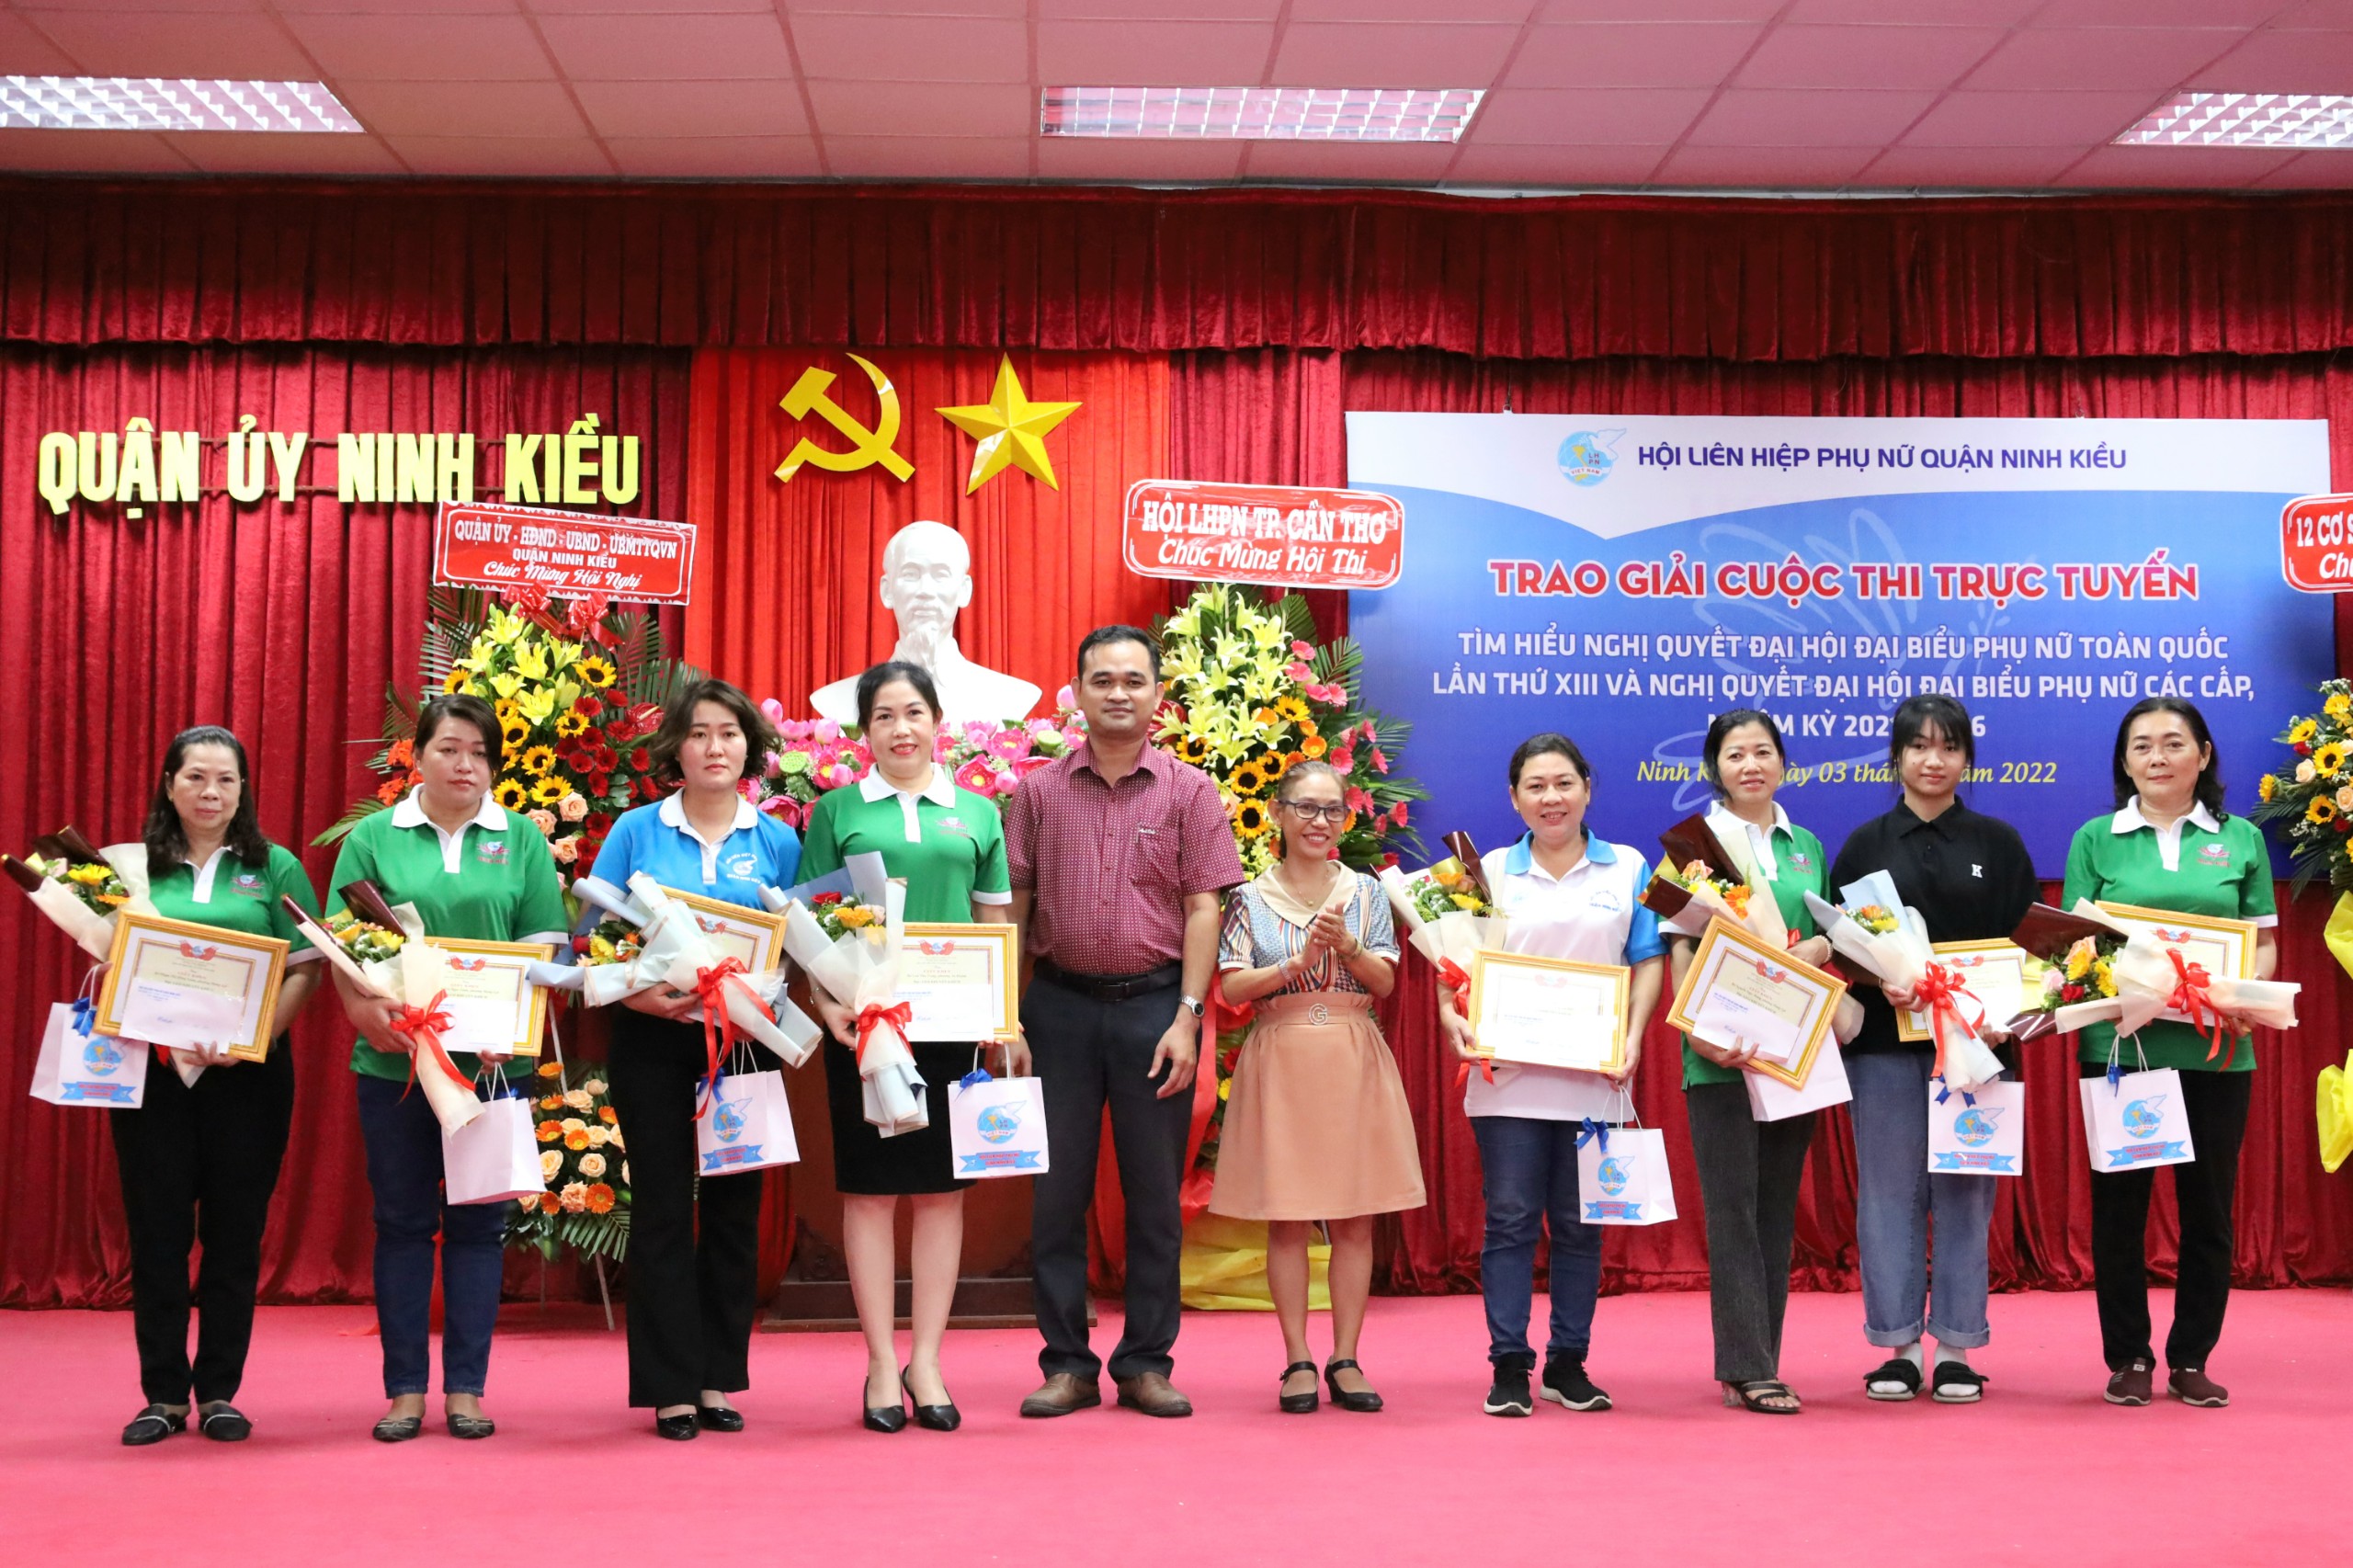 Ông Lê Văn Hùng - UV Thường trực Ủy ban MTTQVN quận Ninh Kiều và bà Trần Thị Đoan Trang – Trưởng phòng Dân tộc quận Ninh Kiều trao giải cho các cá nhân đạt giải khuyến khích hội thi.